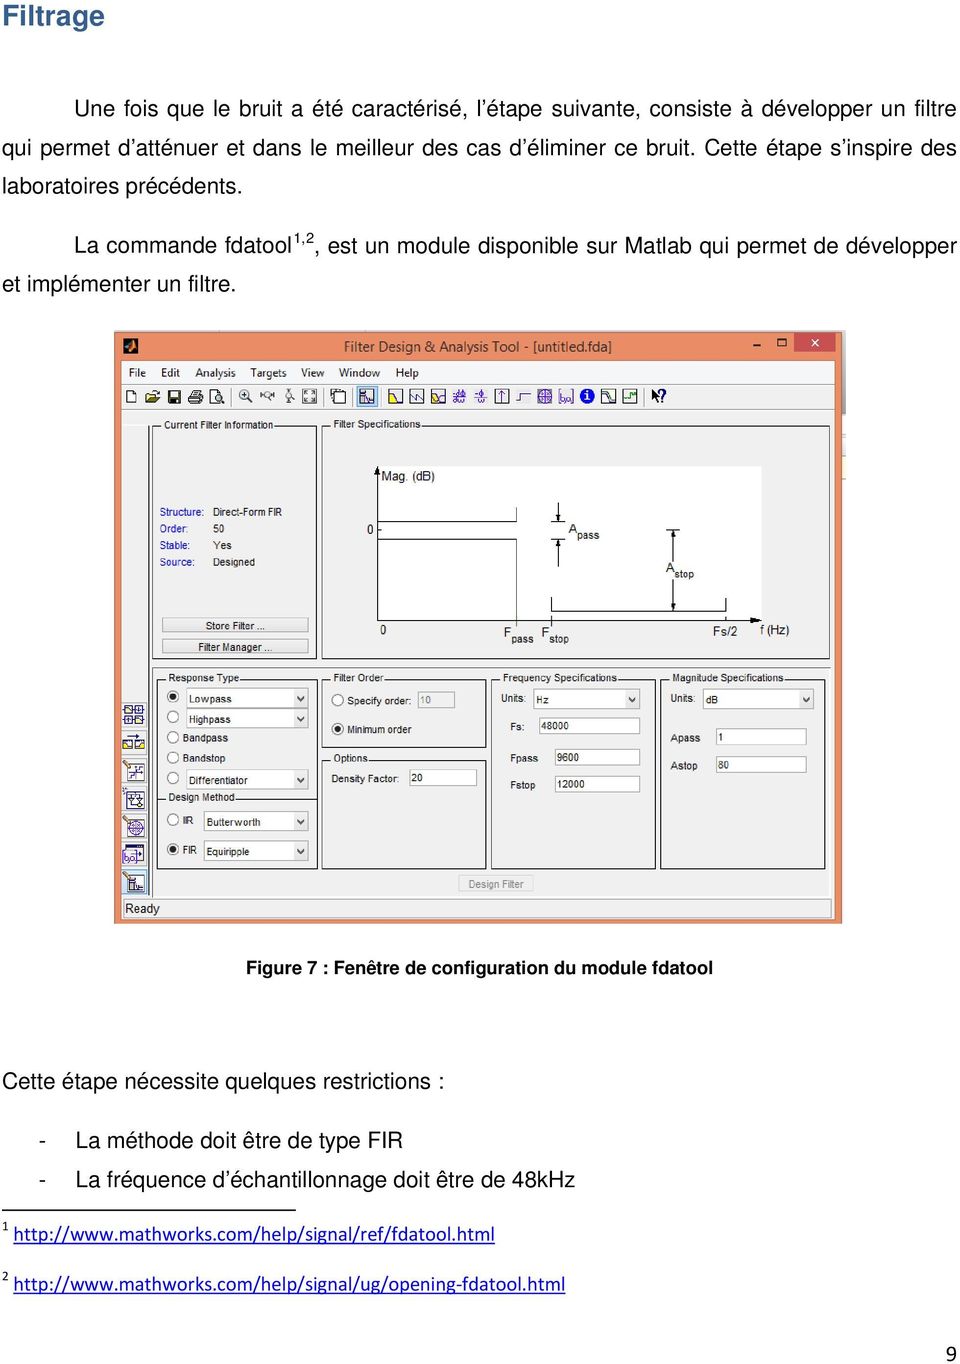 La commande fdatool 1,2, est un module disponible sur Matlab qui permet de développer et implémenter un filtre.